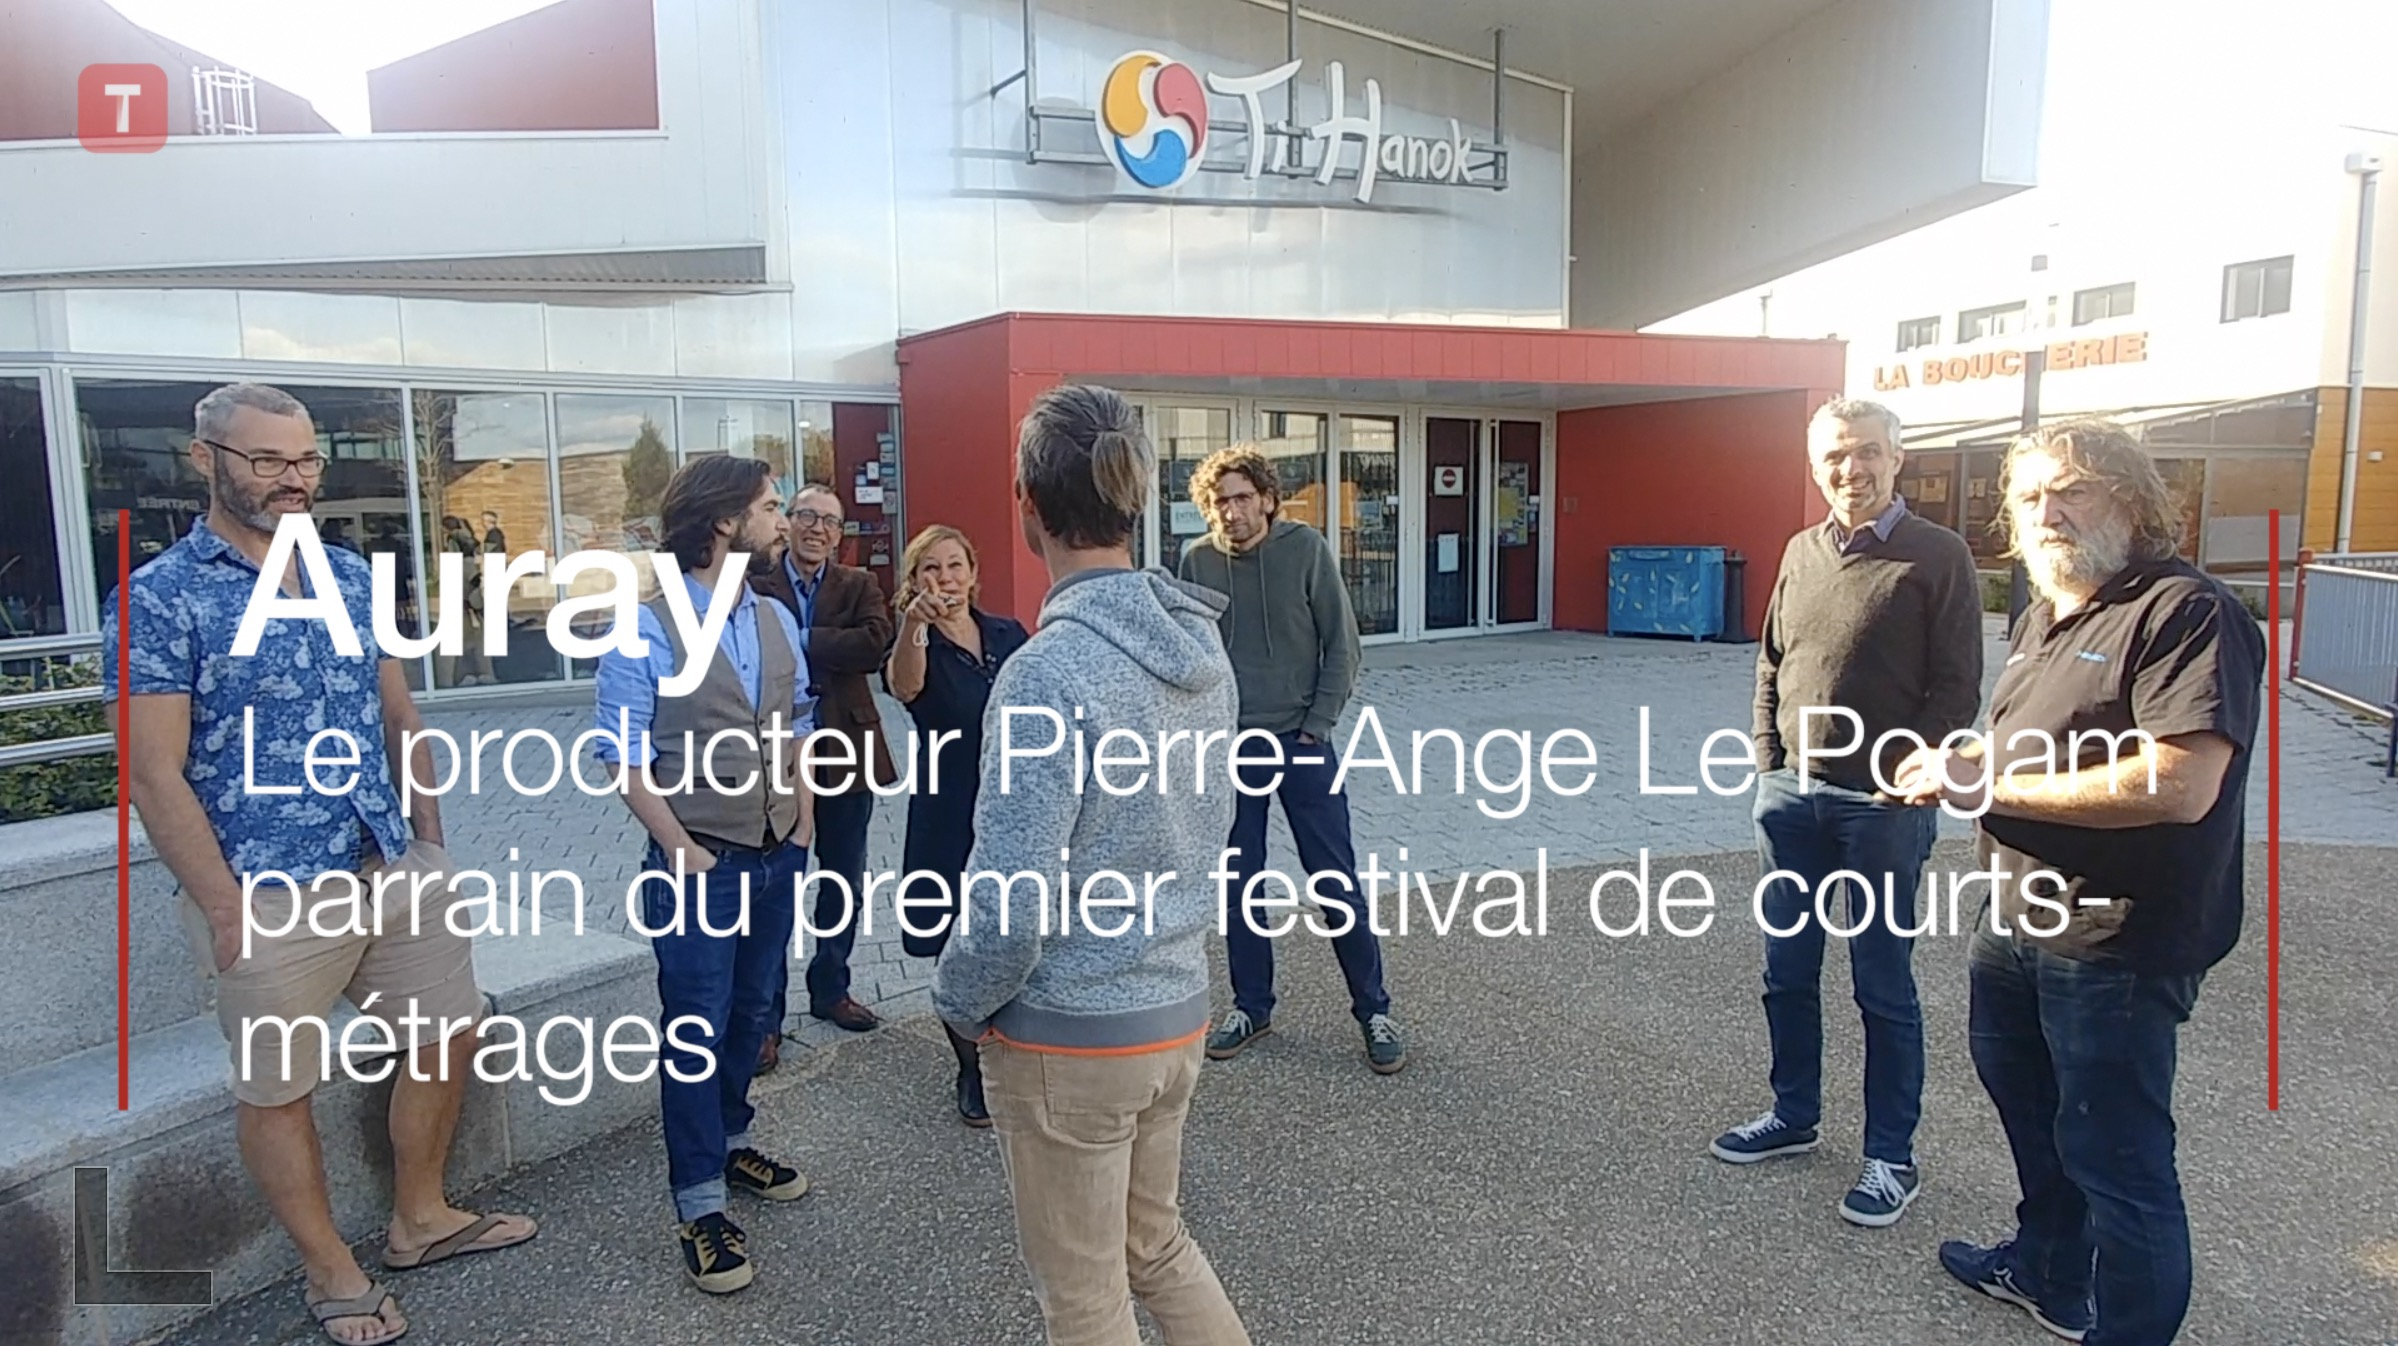 Auray. Le producteur Pierre-Ange Le Pogam parrain du premier festival de courts-métrages (Le Télégramme)